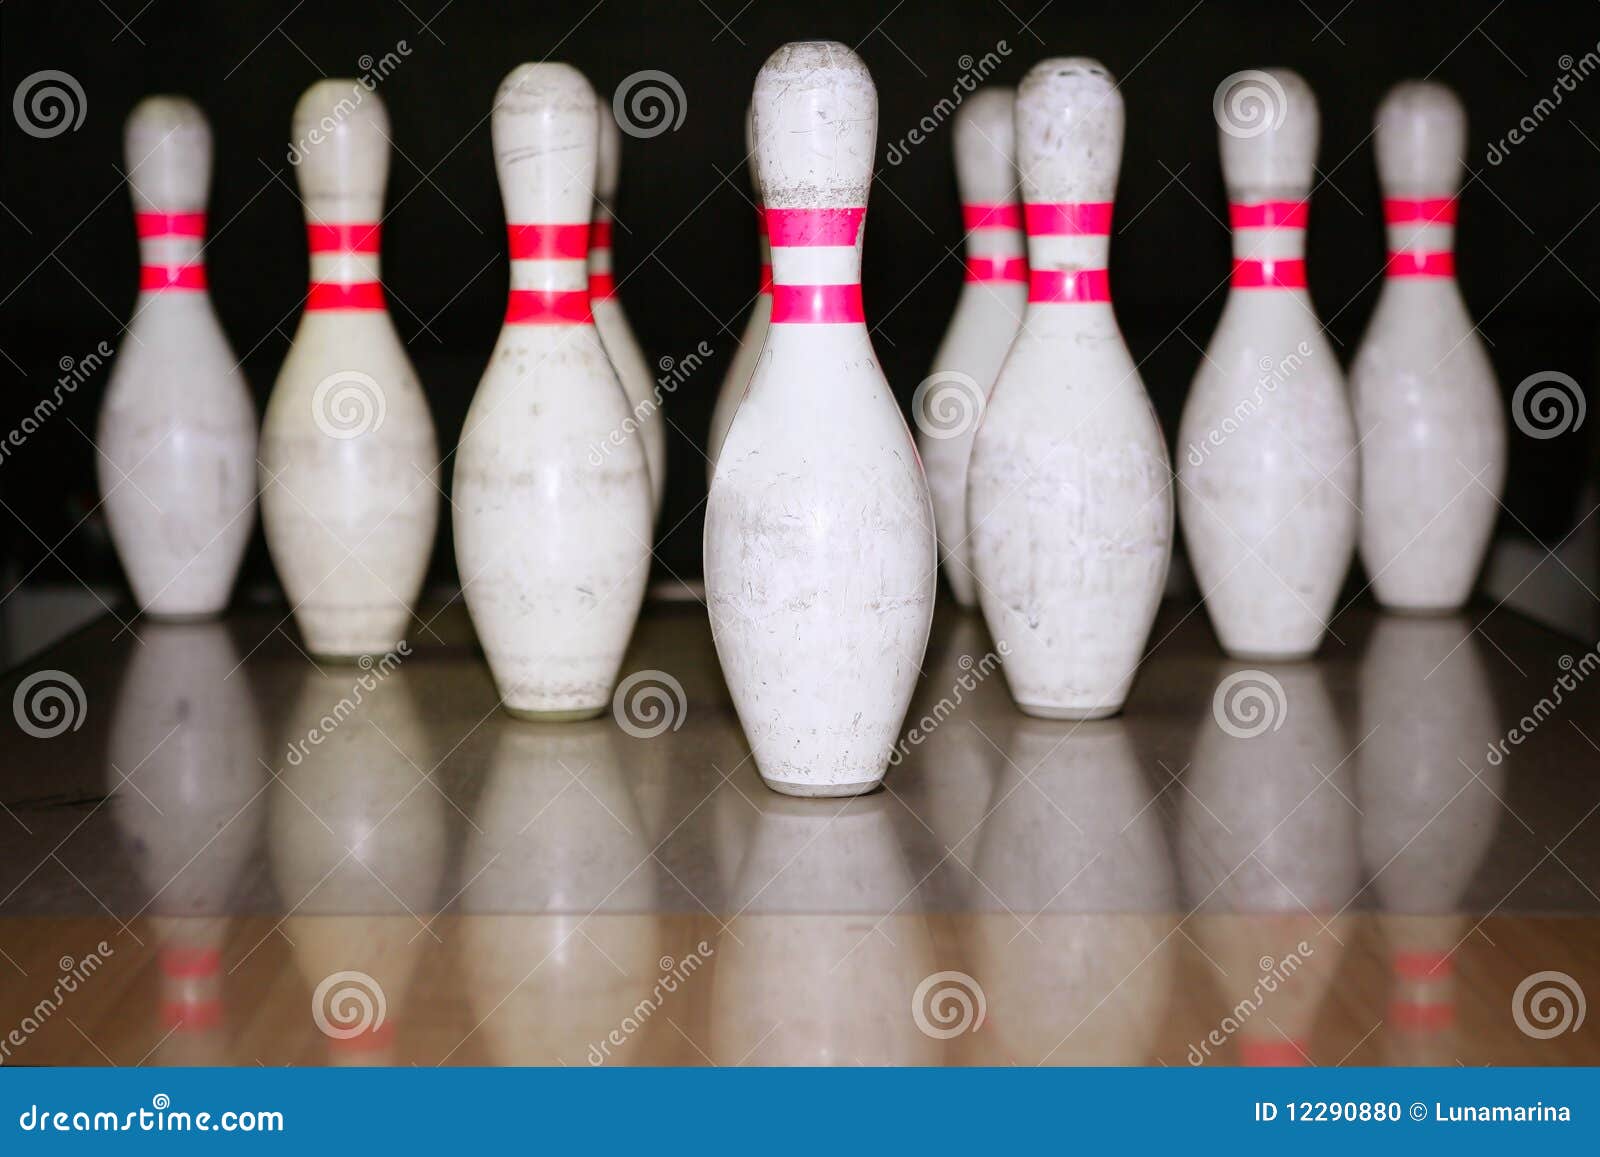 bowling bolus row reflexion on wooden floor